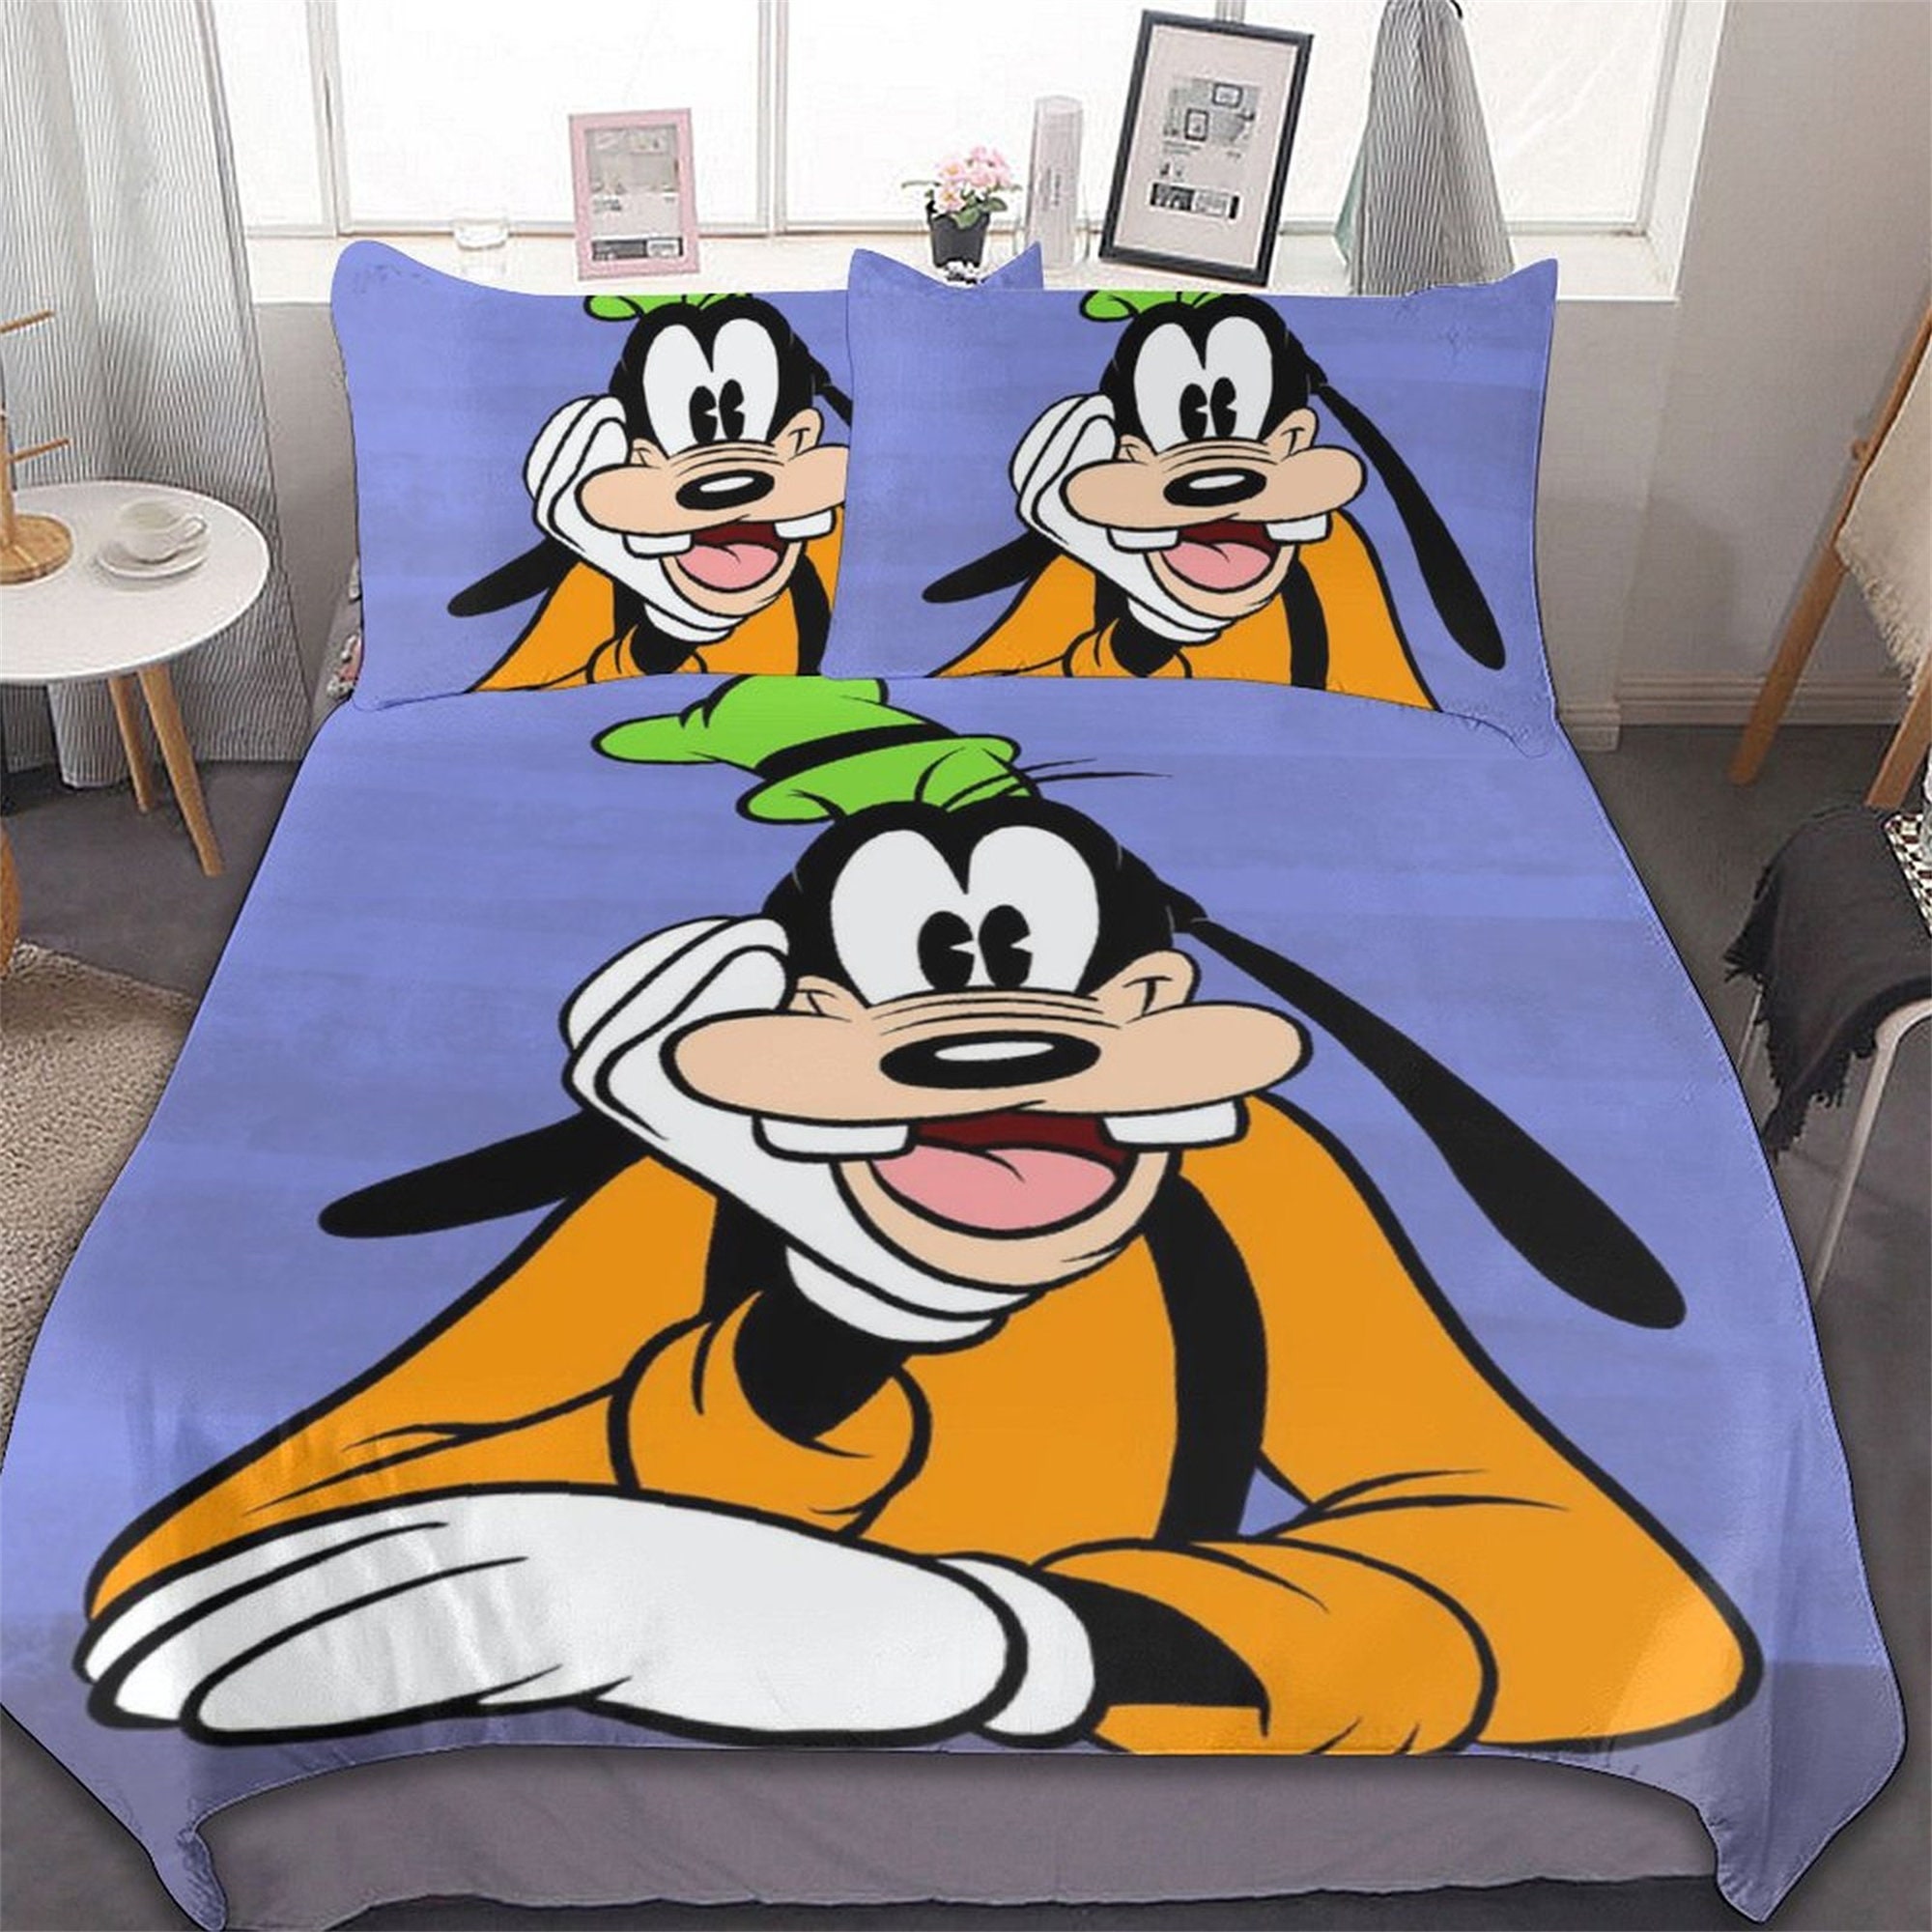 Disney A Goofy  Bedding Set